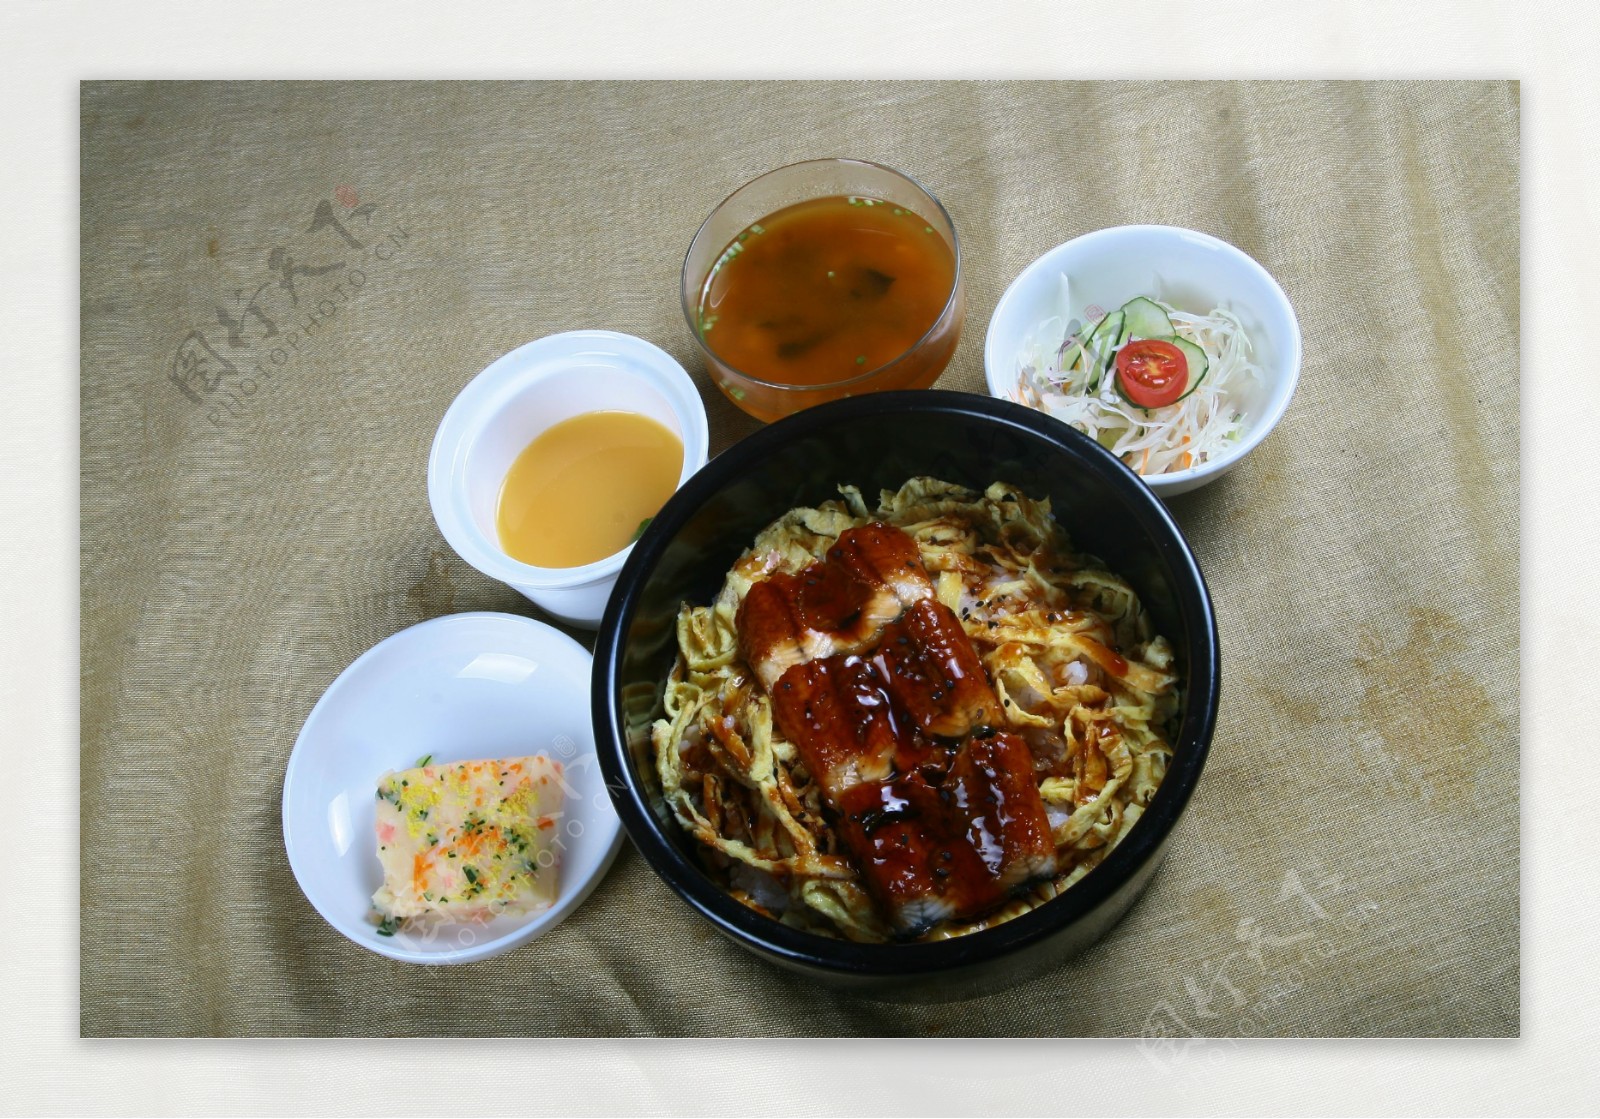 日式套餐烤鳗鱼饭图片